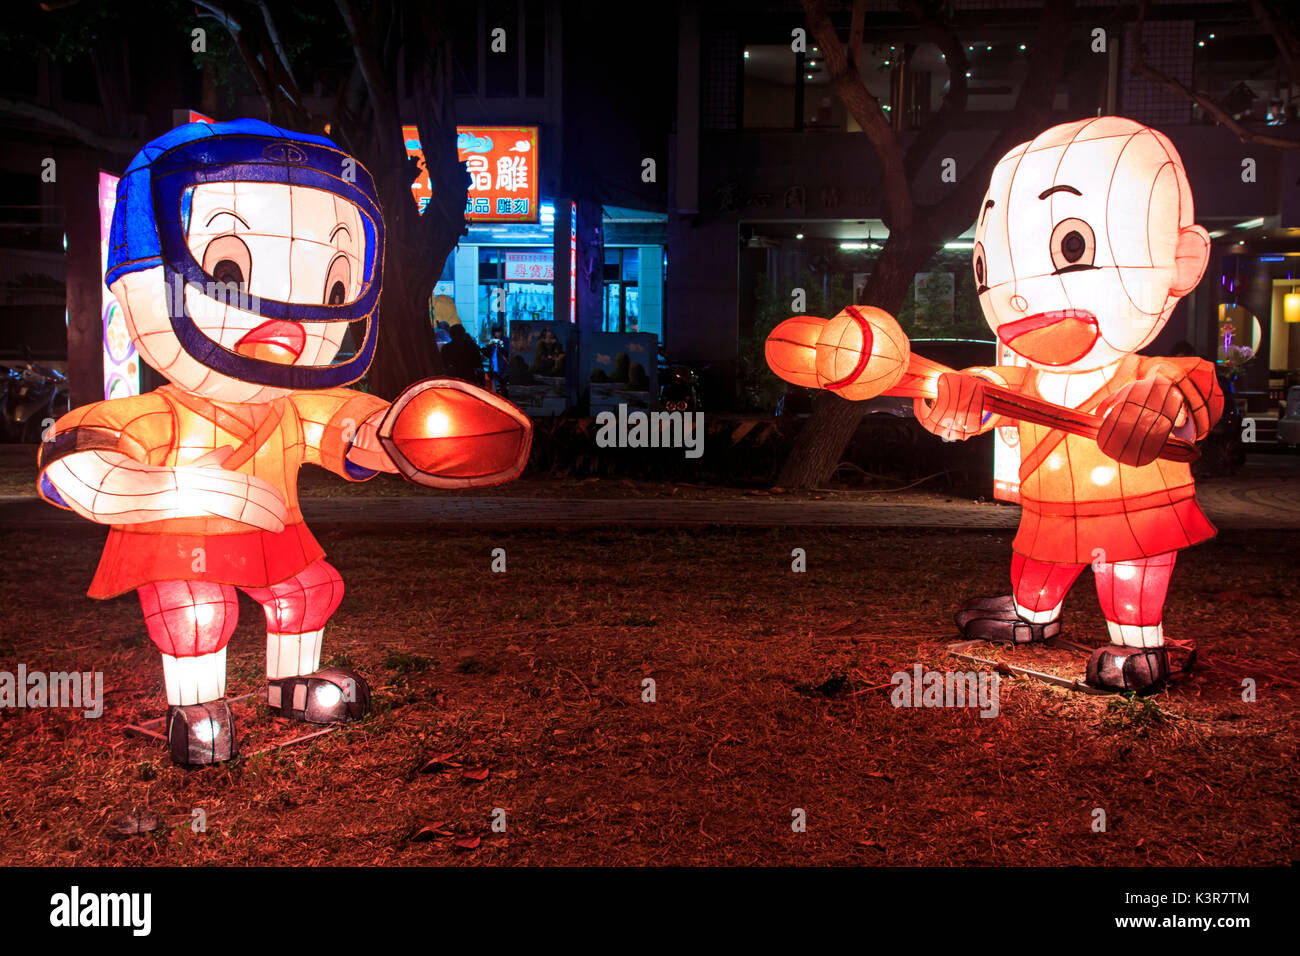 Kaohsiung, Taiwan. Lanterna di carta presso il fiume amante di Kaohsiung, Taiwan, per celebrare il nuovo anno cinese. Il Capodanno cinese è un importante festival cinese ha celebrato presso la volta del calendario cinese. In Cina, è anche noto come il Festival di Primavera, la traduzione letterale del moderno nome cinese. Foto Stock